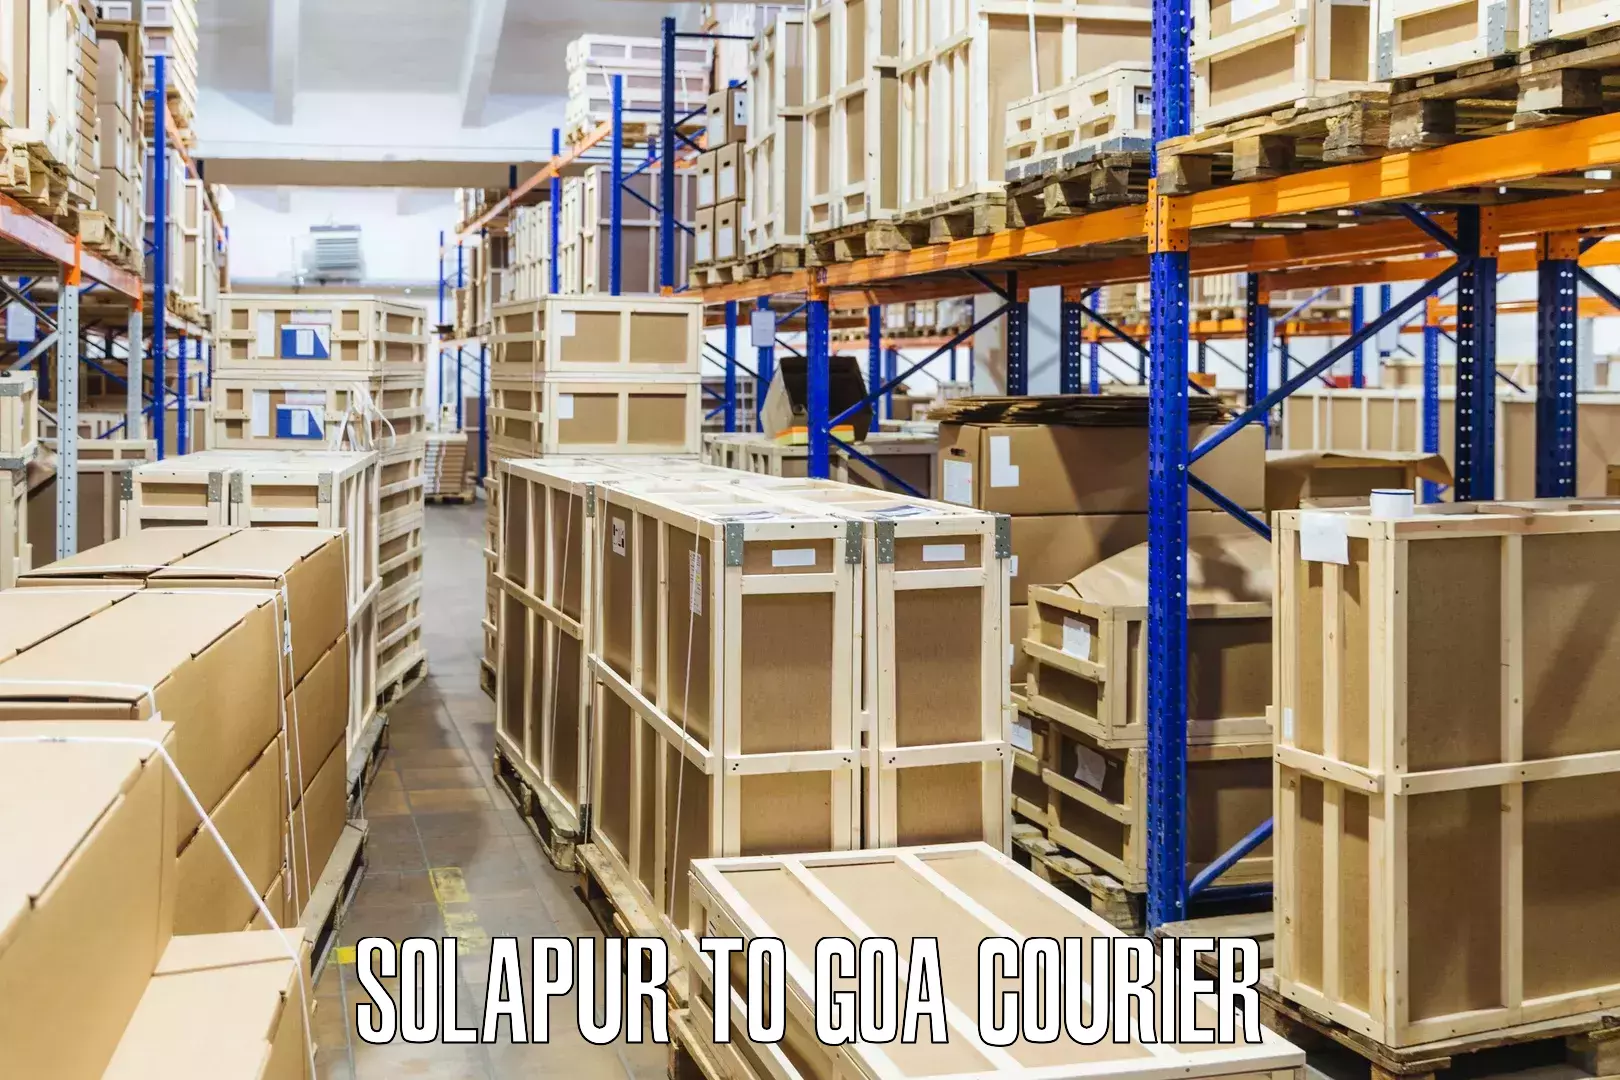 Efficient parcel delivery Solapur to Vasco da Gama